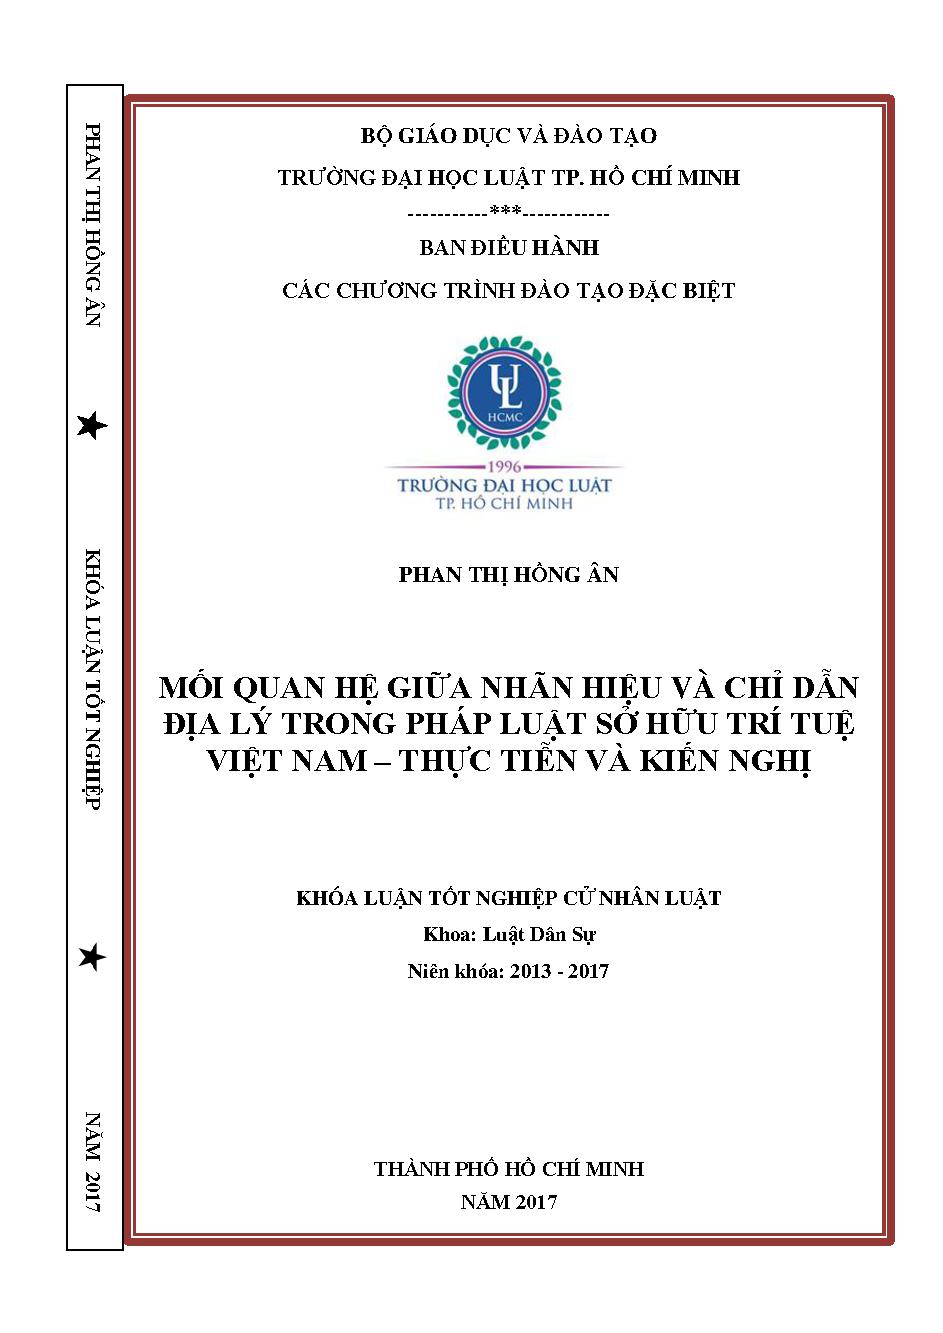 Mối quan hệ giữa nhãn hiệu và chỉ dẫn địa lý trong pháp luật sở hữu trí tuệ Việt Nam - Thực tiễn và kiến nghị